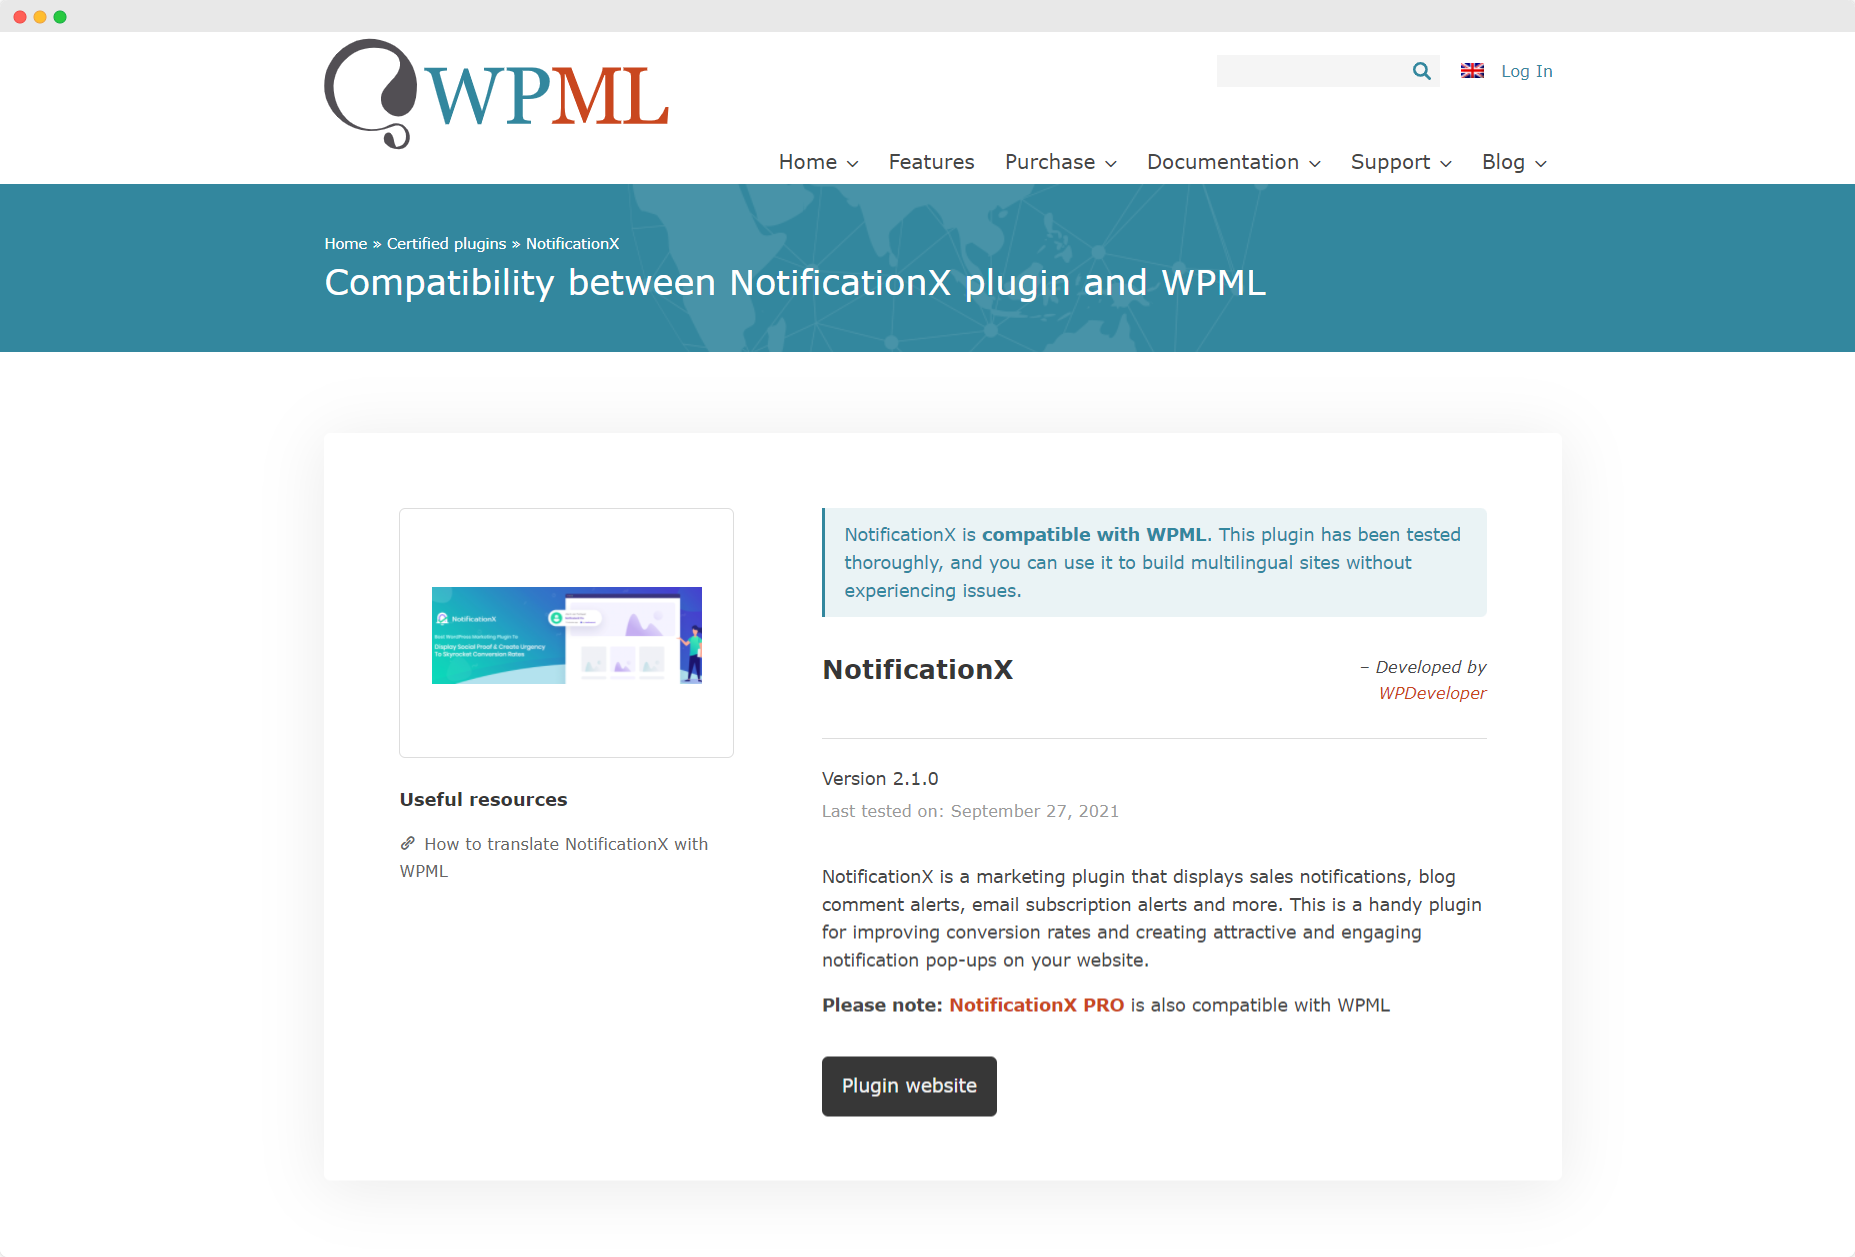 [NUEVO] NotificationX ahora es compatible con WPML 1